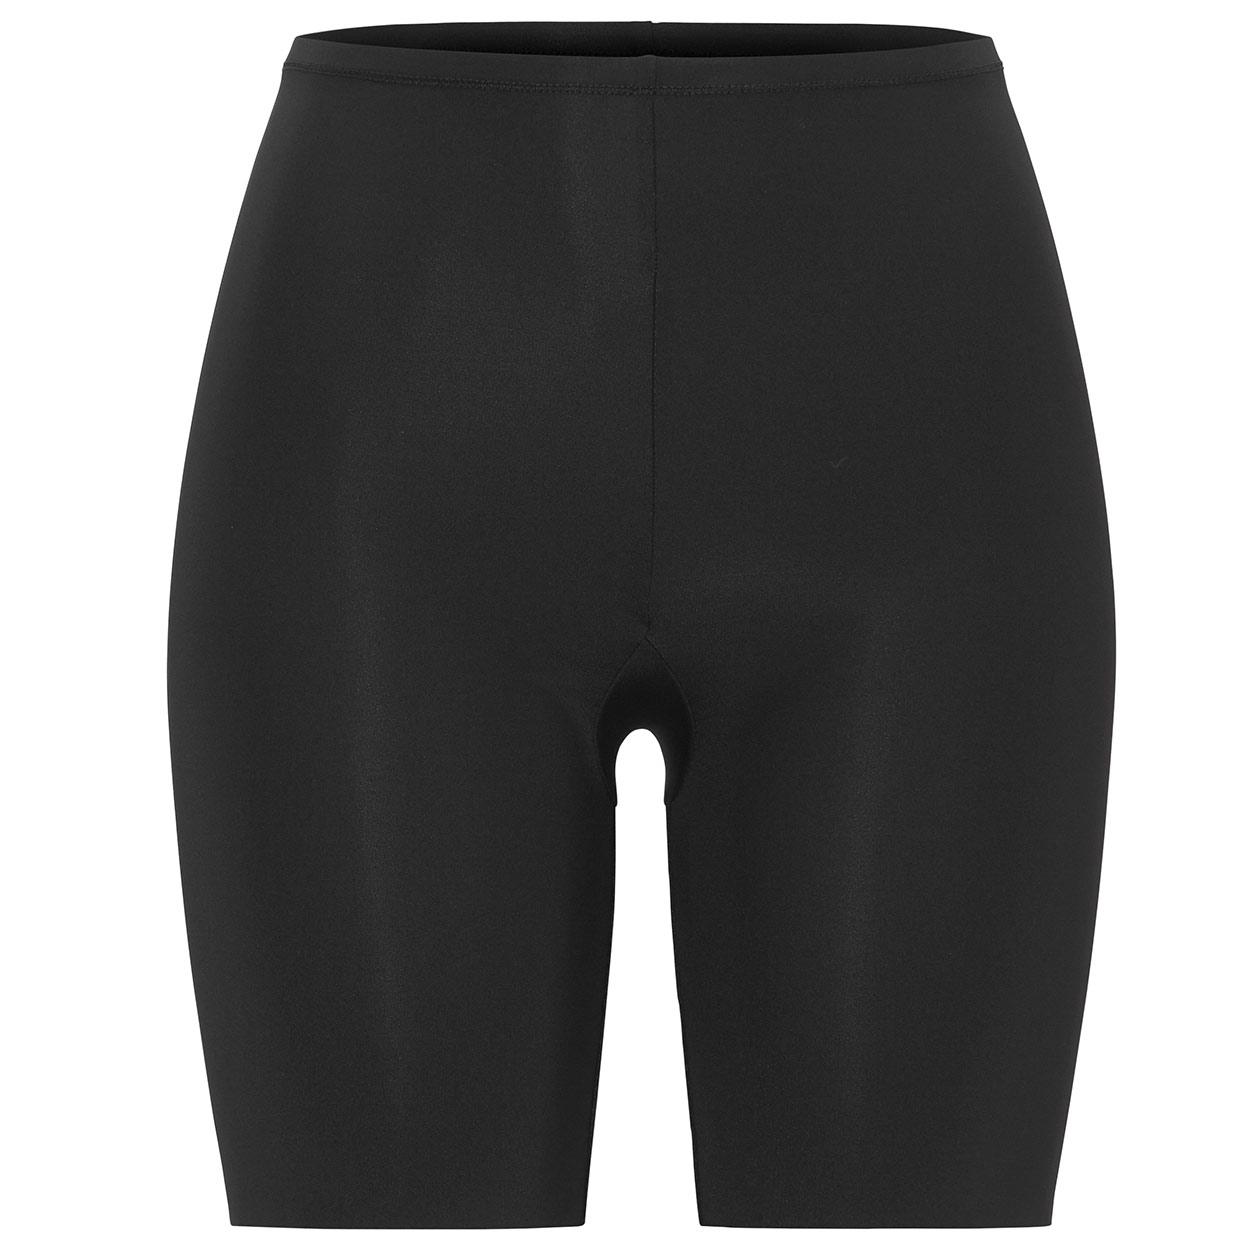 Swegmark Panty Modell Cool & Dry in Farbe Schwarz in der Vorderansicht